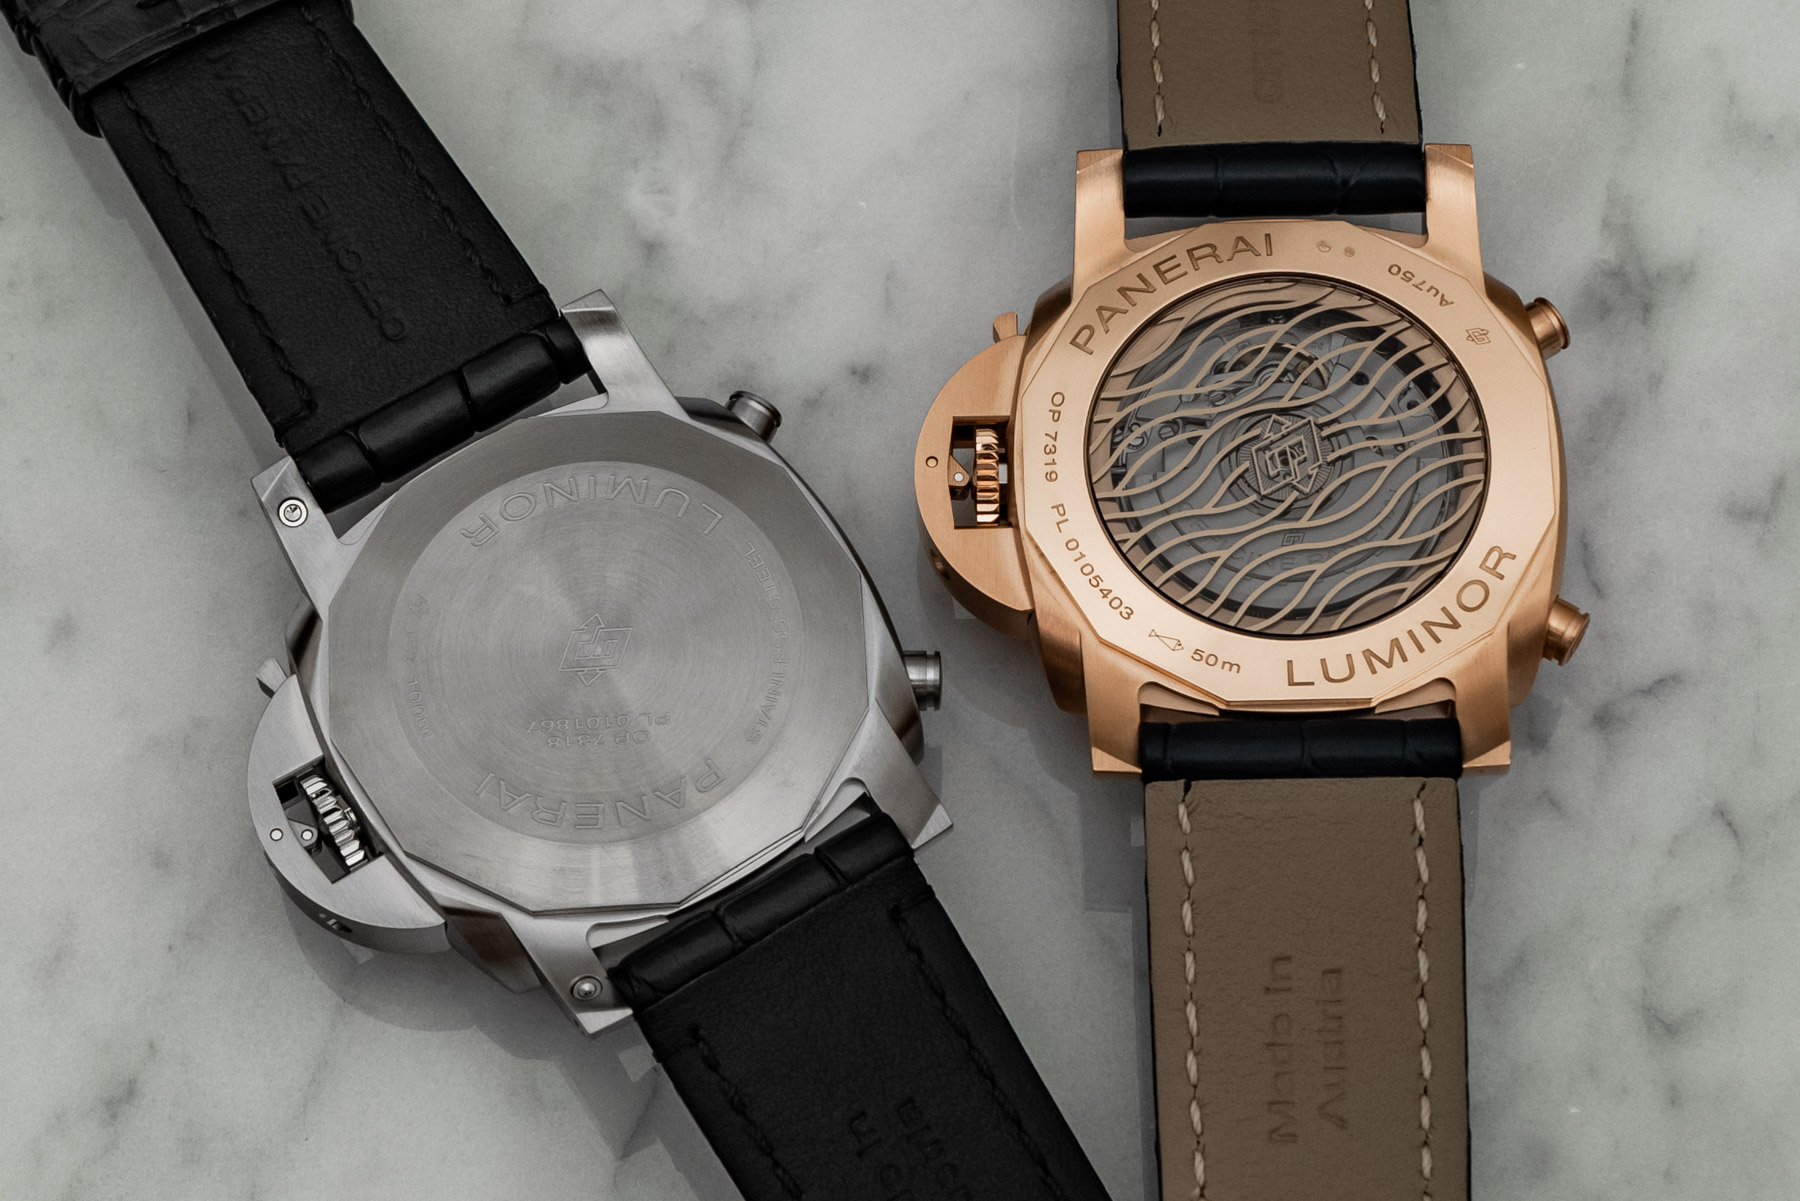 沛纳海发布了全新的计时腕表系列-全新机芯的全新沛纳海 Luminor Chrono